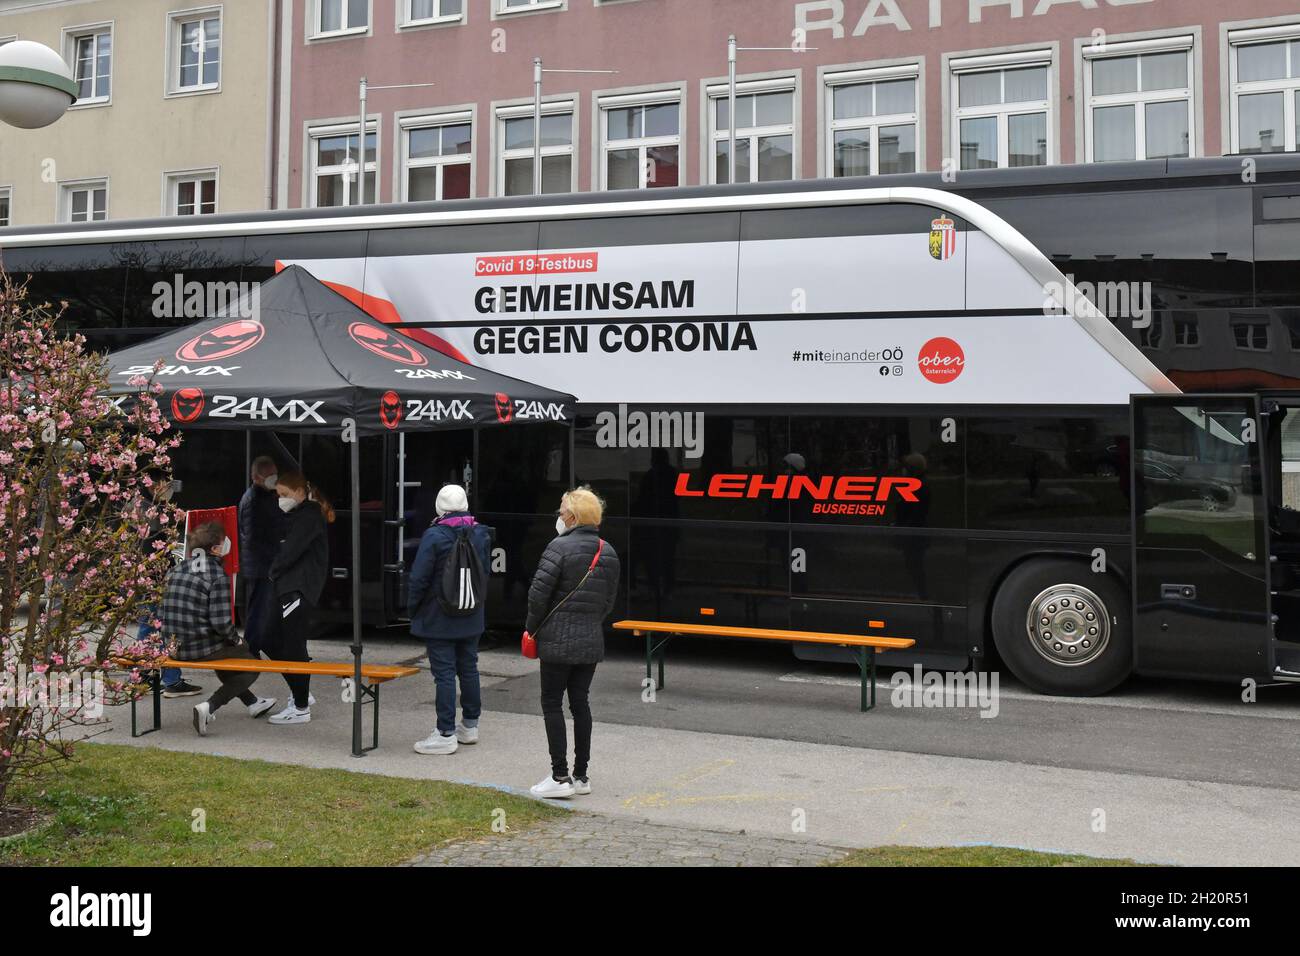 Corona-Testbus 'Gemeinsam gegen Corona' des Landes Oberösterreich unterwegs, Österreich, Europa - Corona test bus 'Together against Corona' from the s Stock Photo